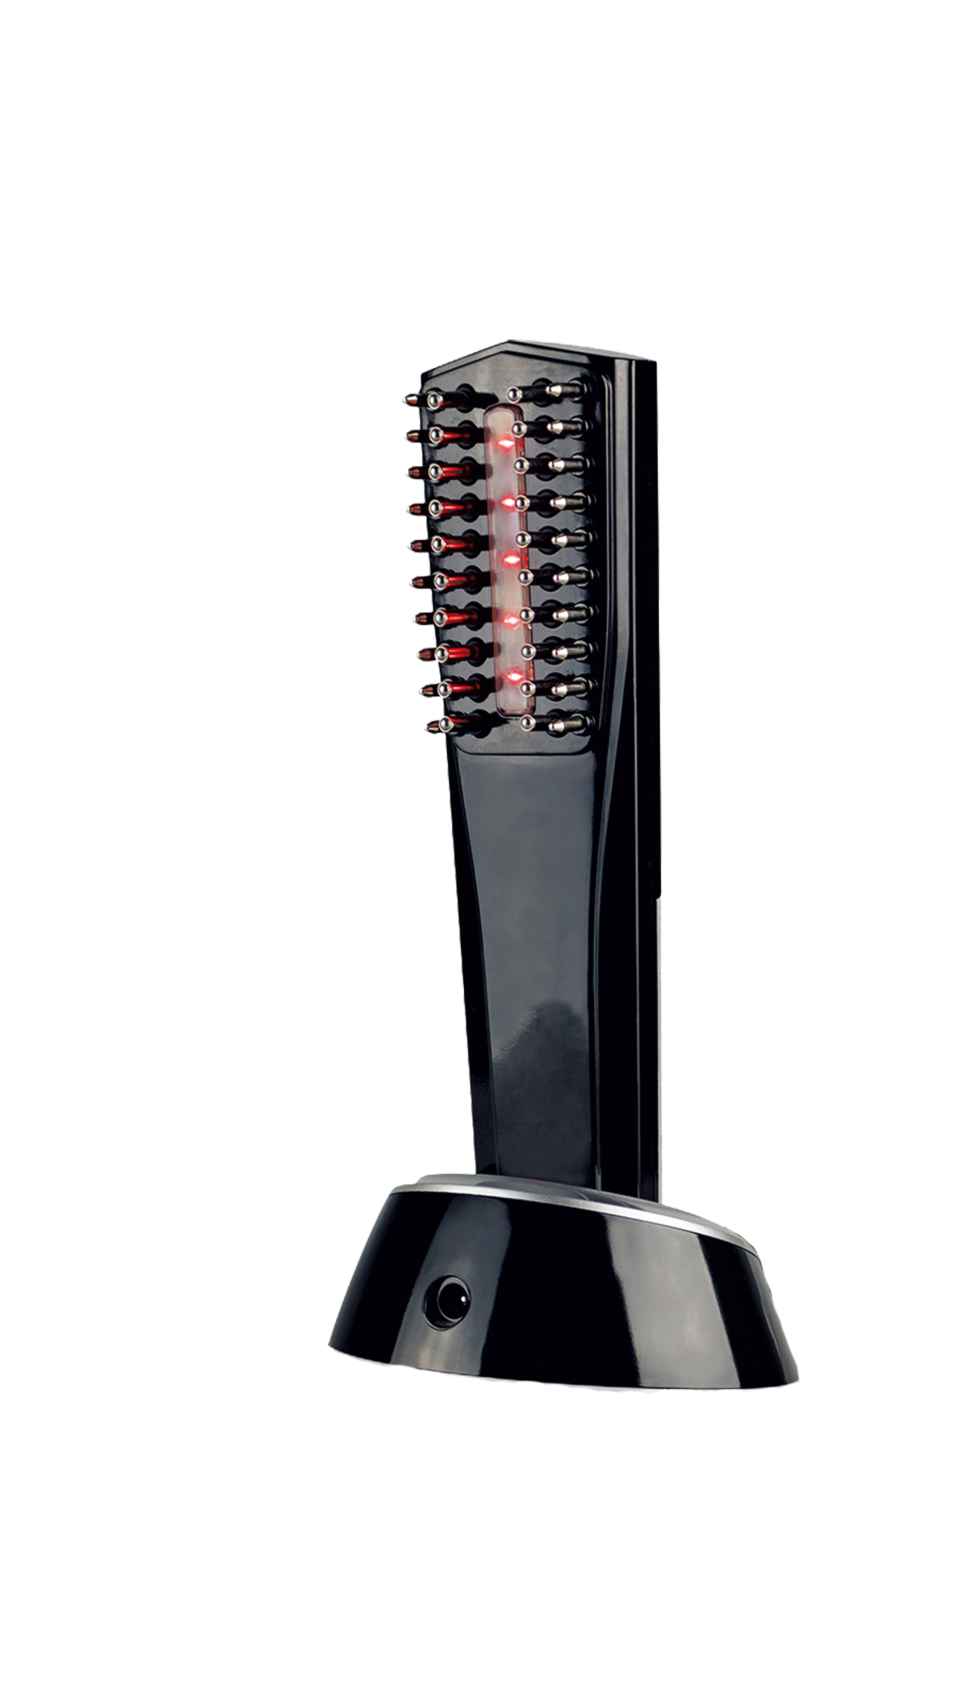 La marca recomienda usar el cepillo junto al Hair Regenerator Serum Forte.